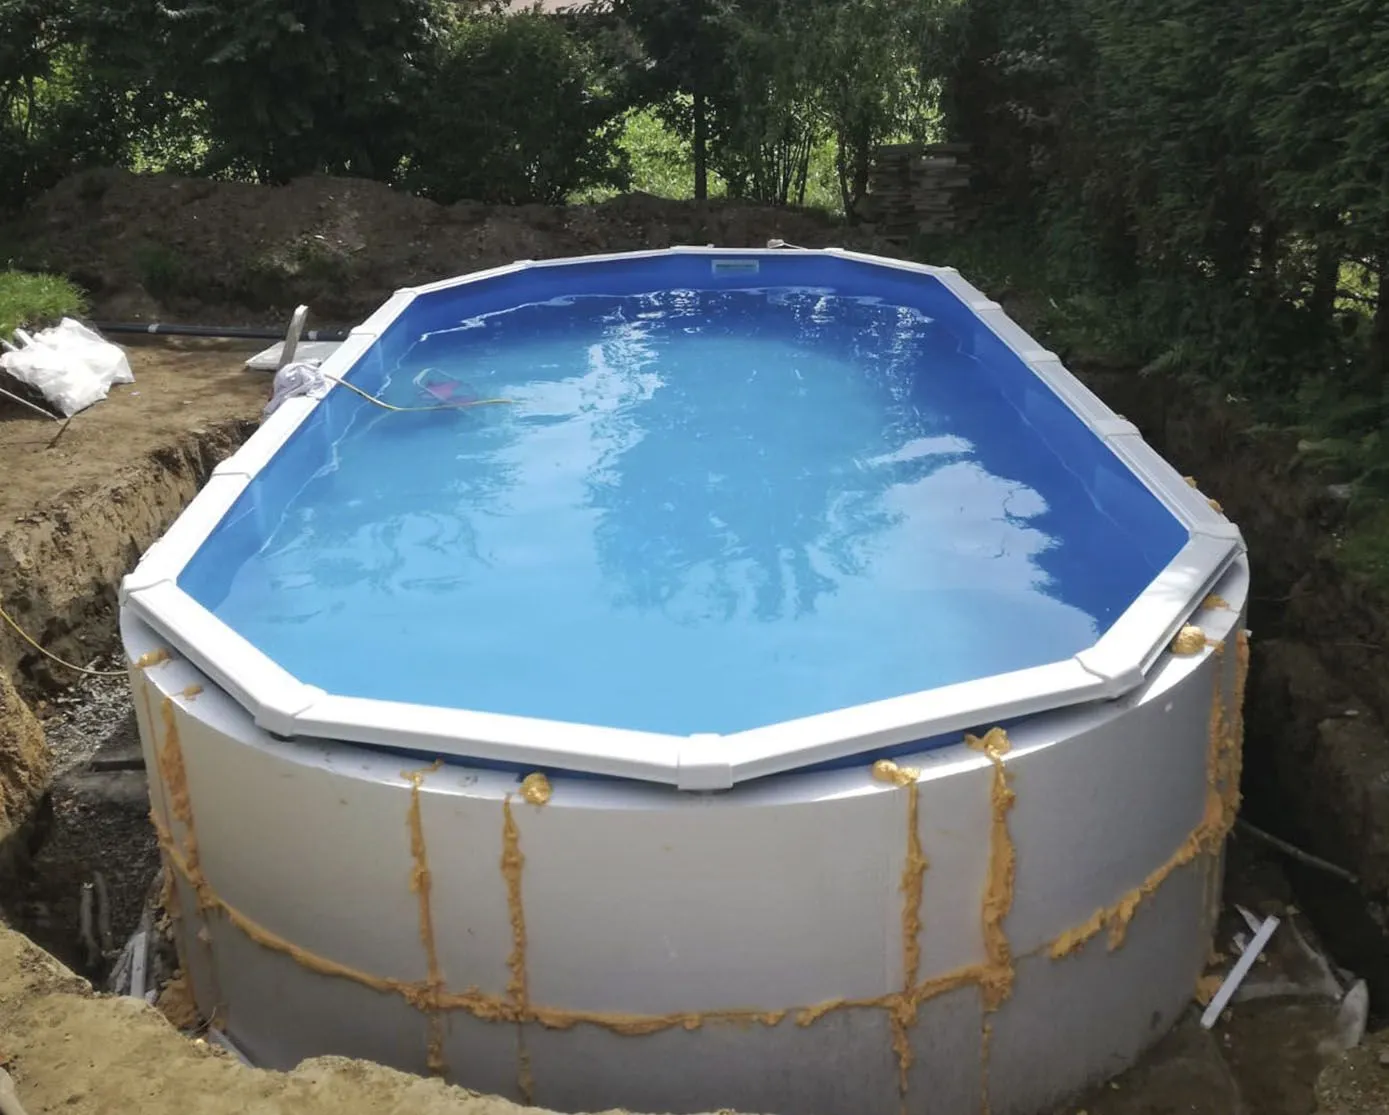 Poolwandisolierung KWAD "Pool Protector T60" Bauplatten weiß Poolzubehör -reinigung für Ovalformbecken der Größe 920x460x132 cm